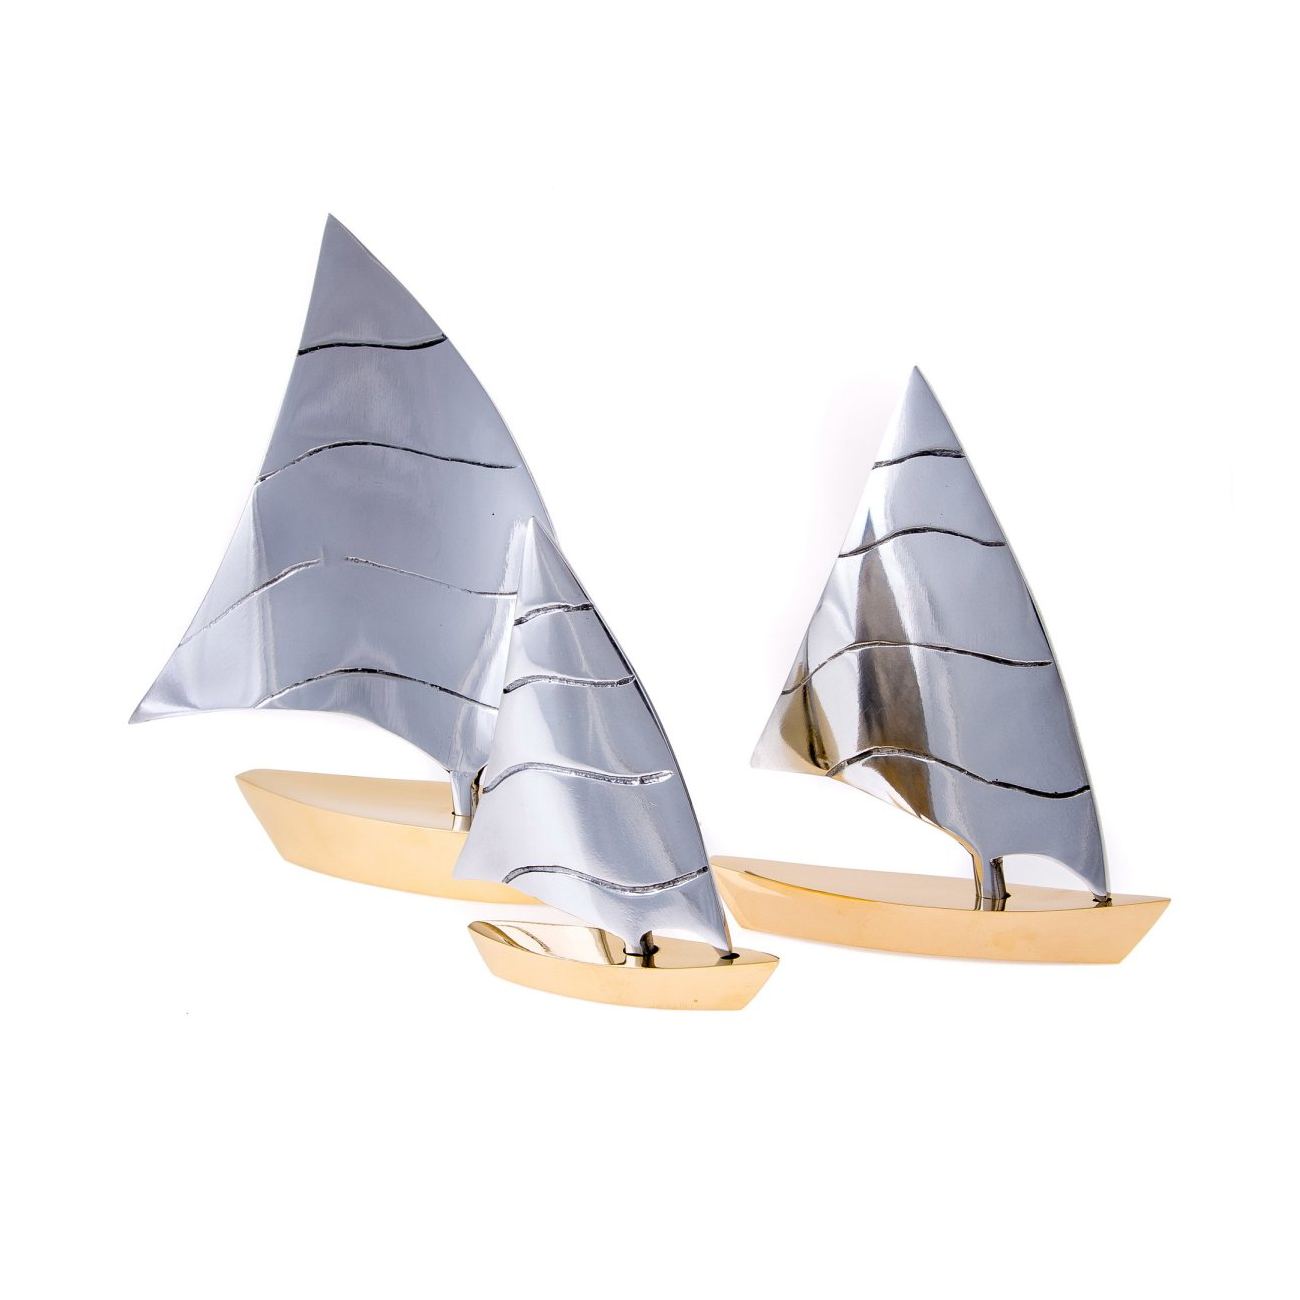 Aluminium Sailing Boats Exclusive Decor Ship Models SET OF 3 PIECES f 